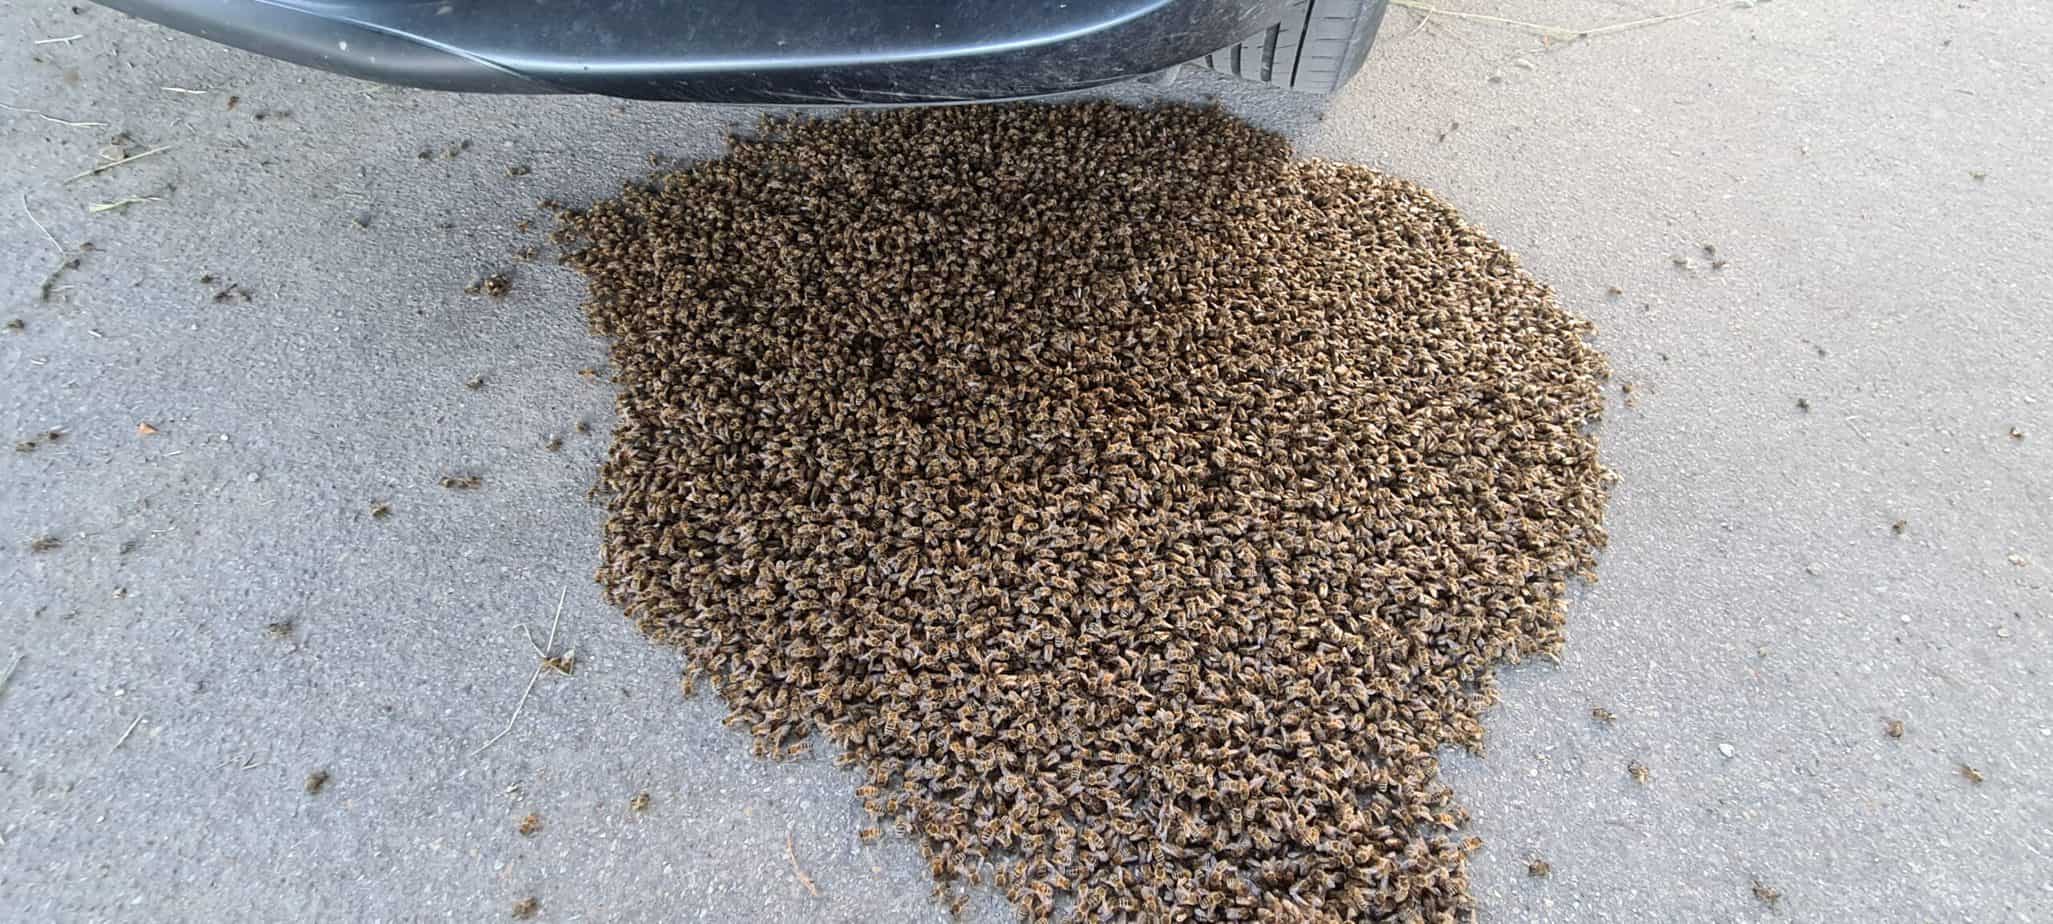 Einsatz Bienenschwarm Juni 2021